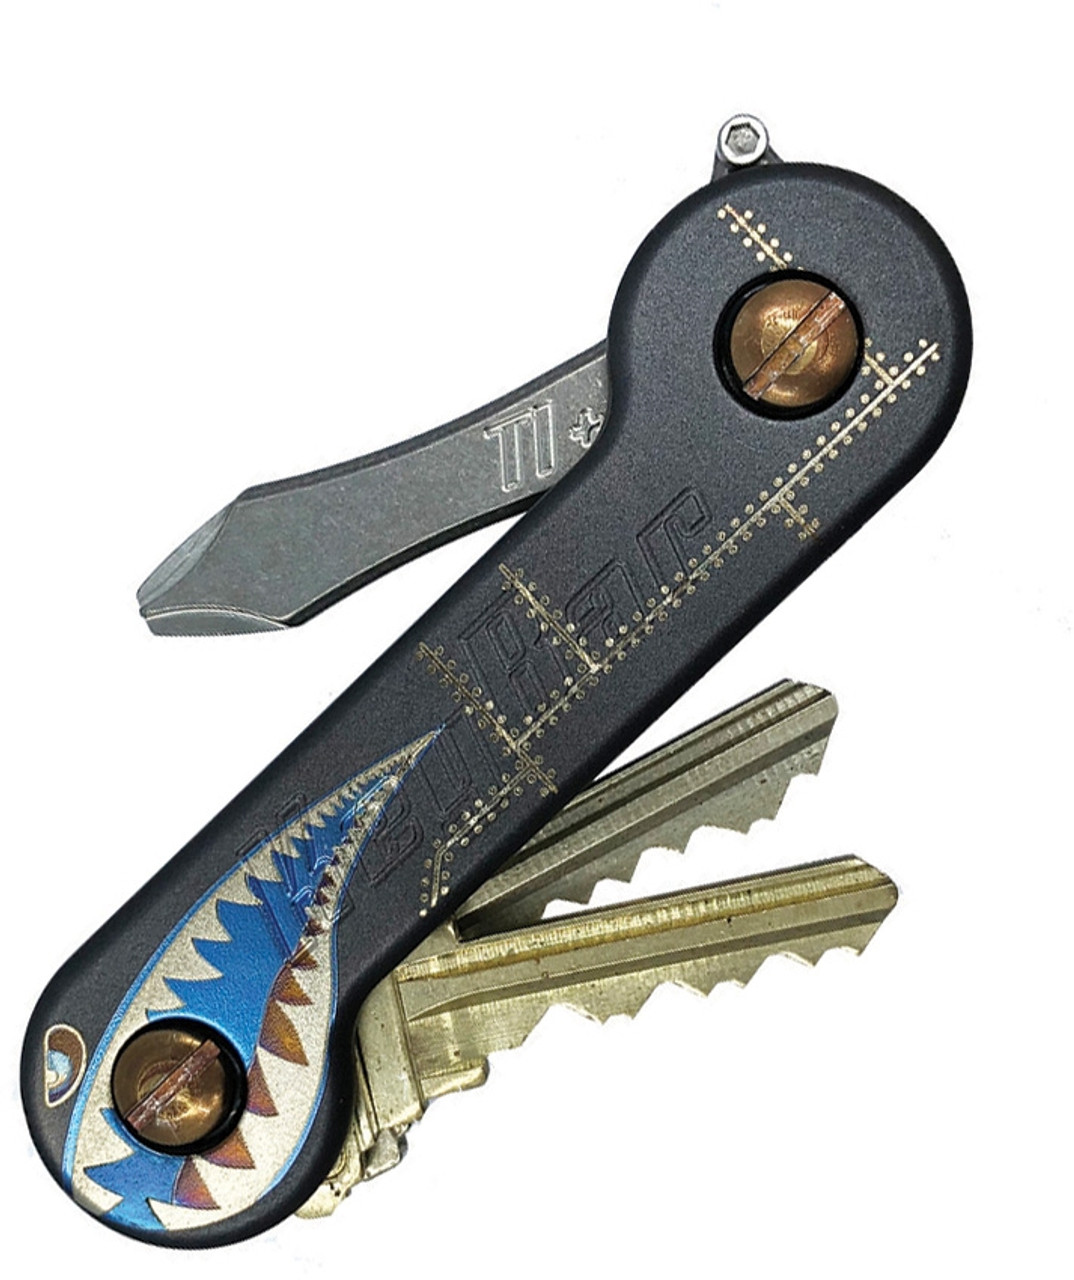 KeyBar Titanium Pocket Key Holder/Organizer (Holds up to 12 Keys